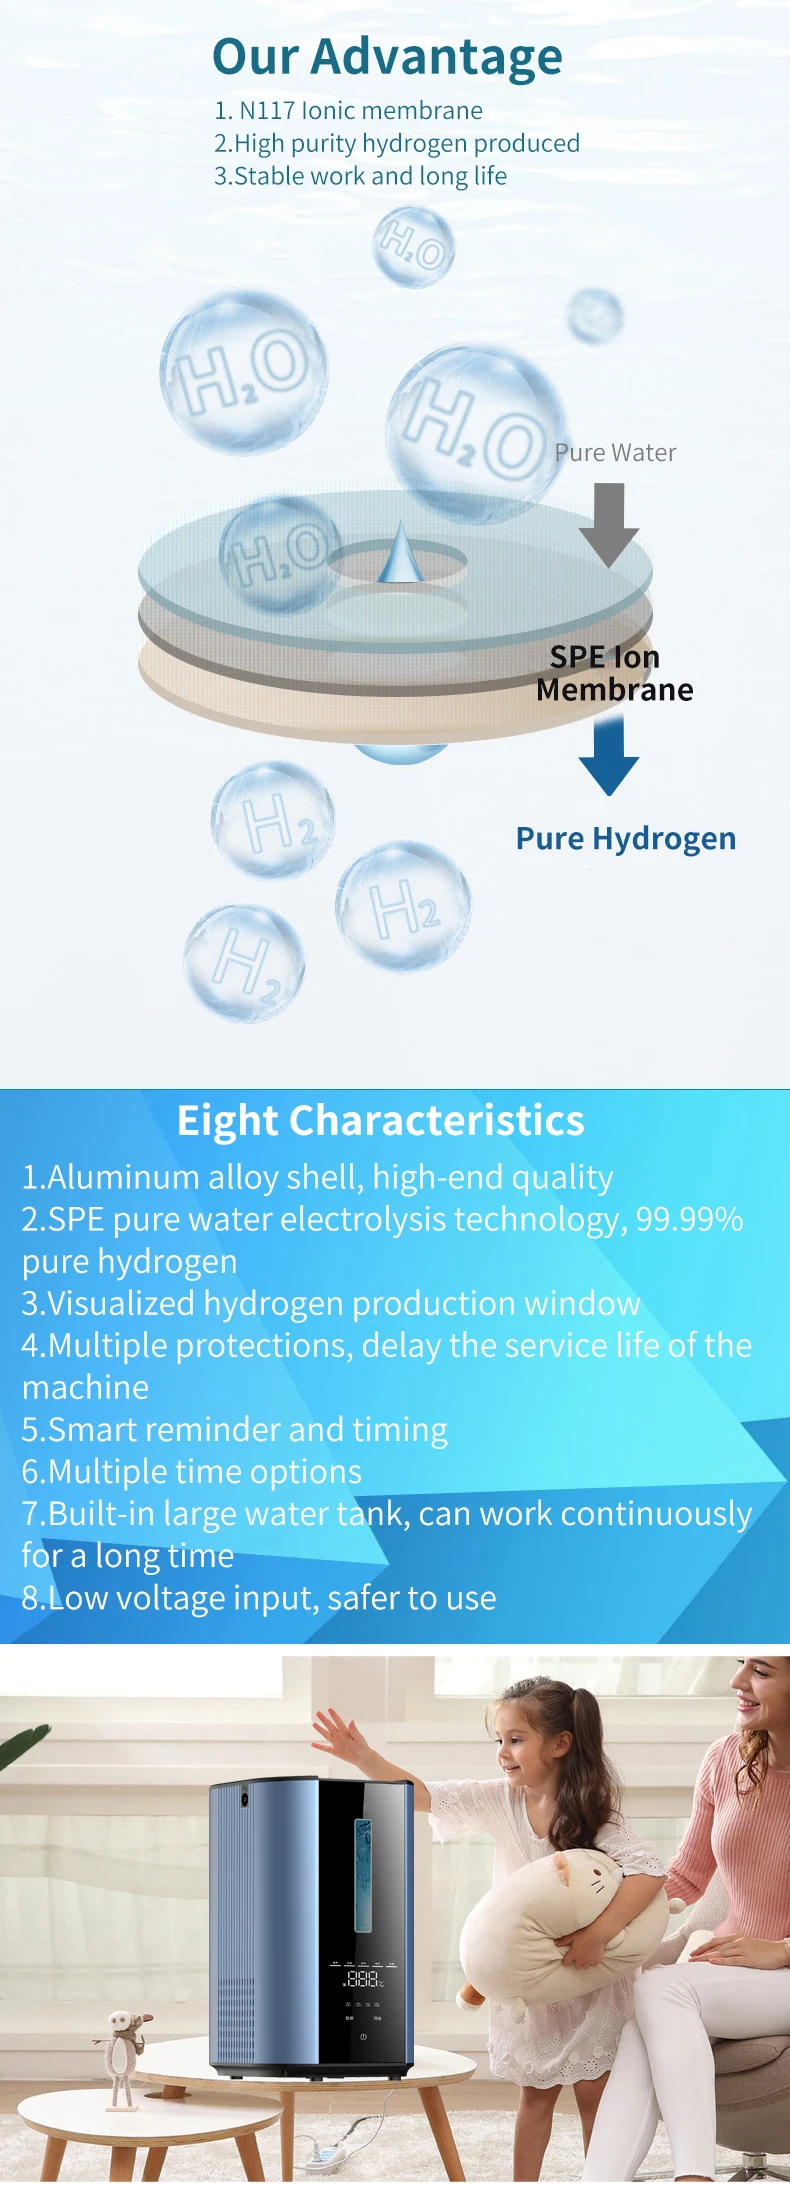 Hydrogen Inhalation Machine